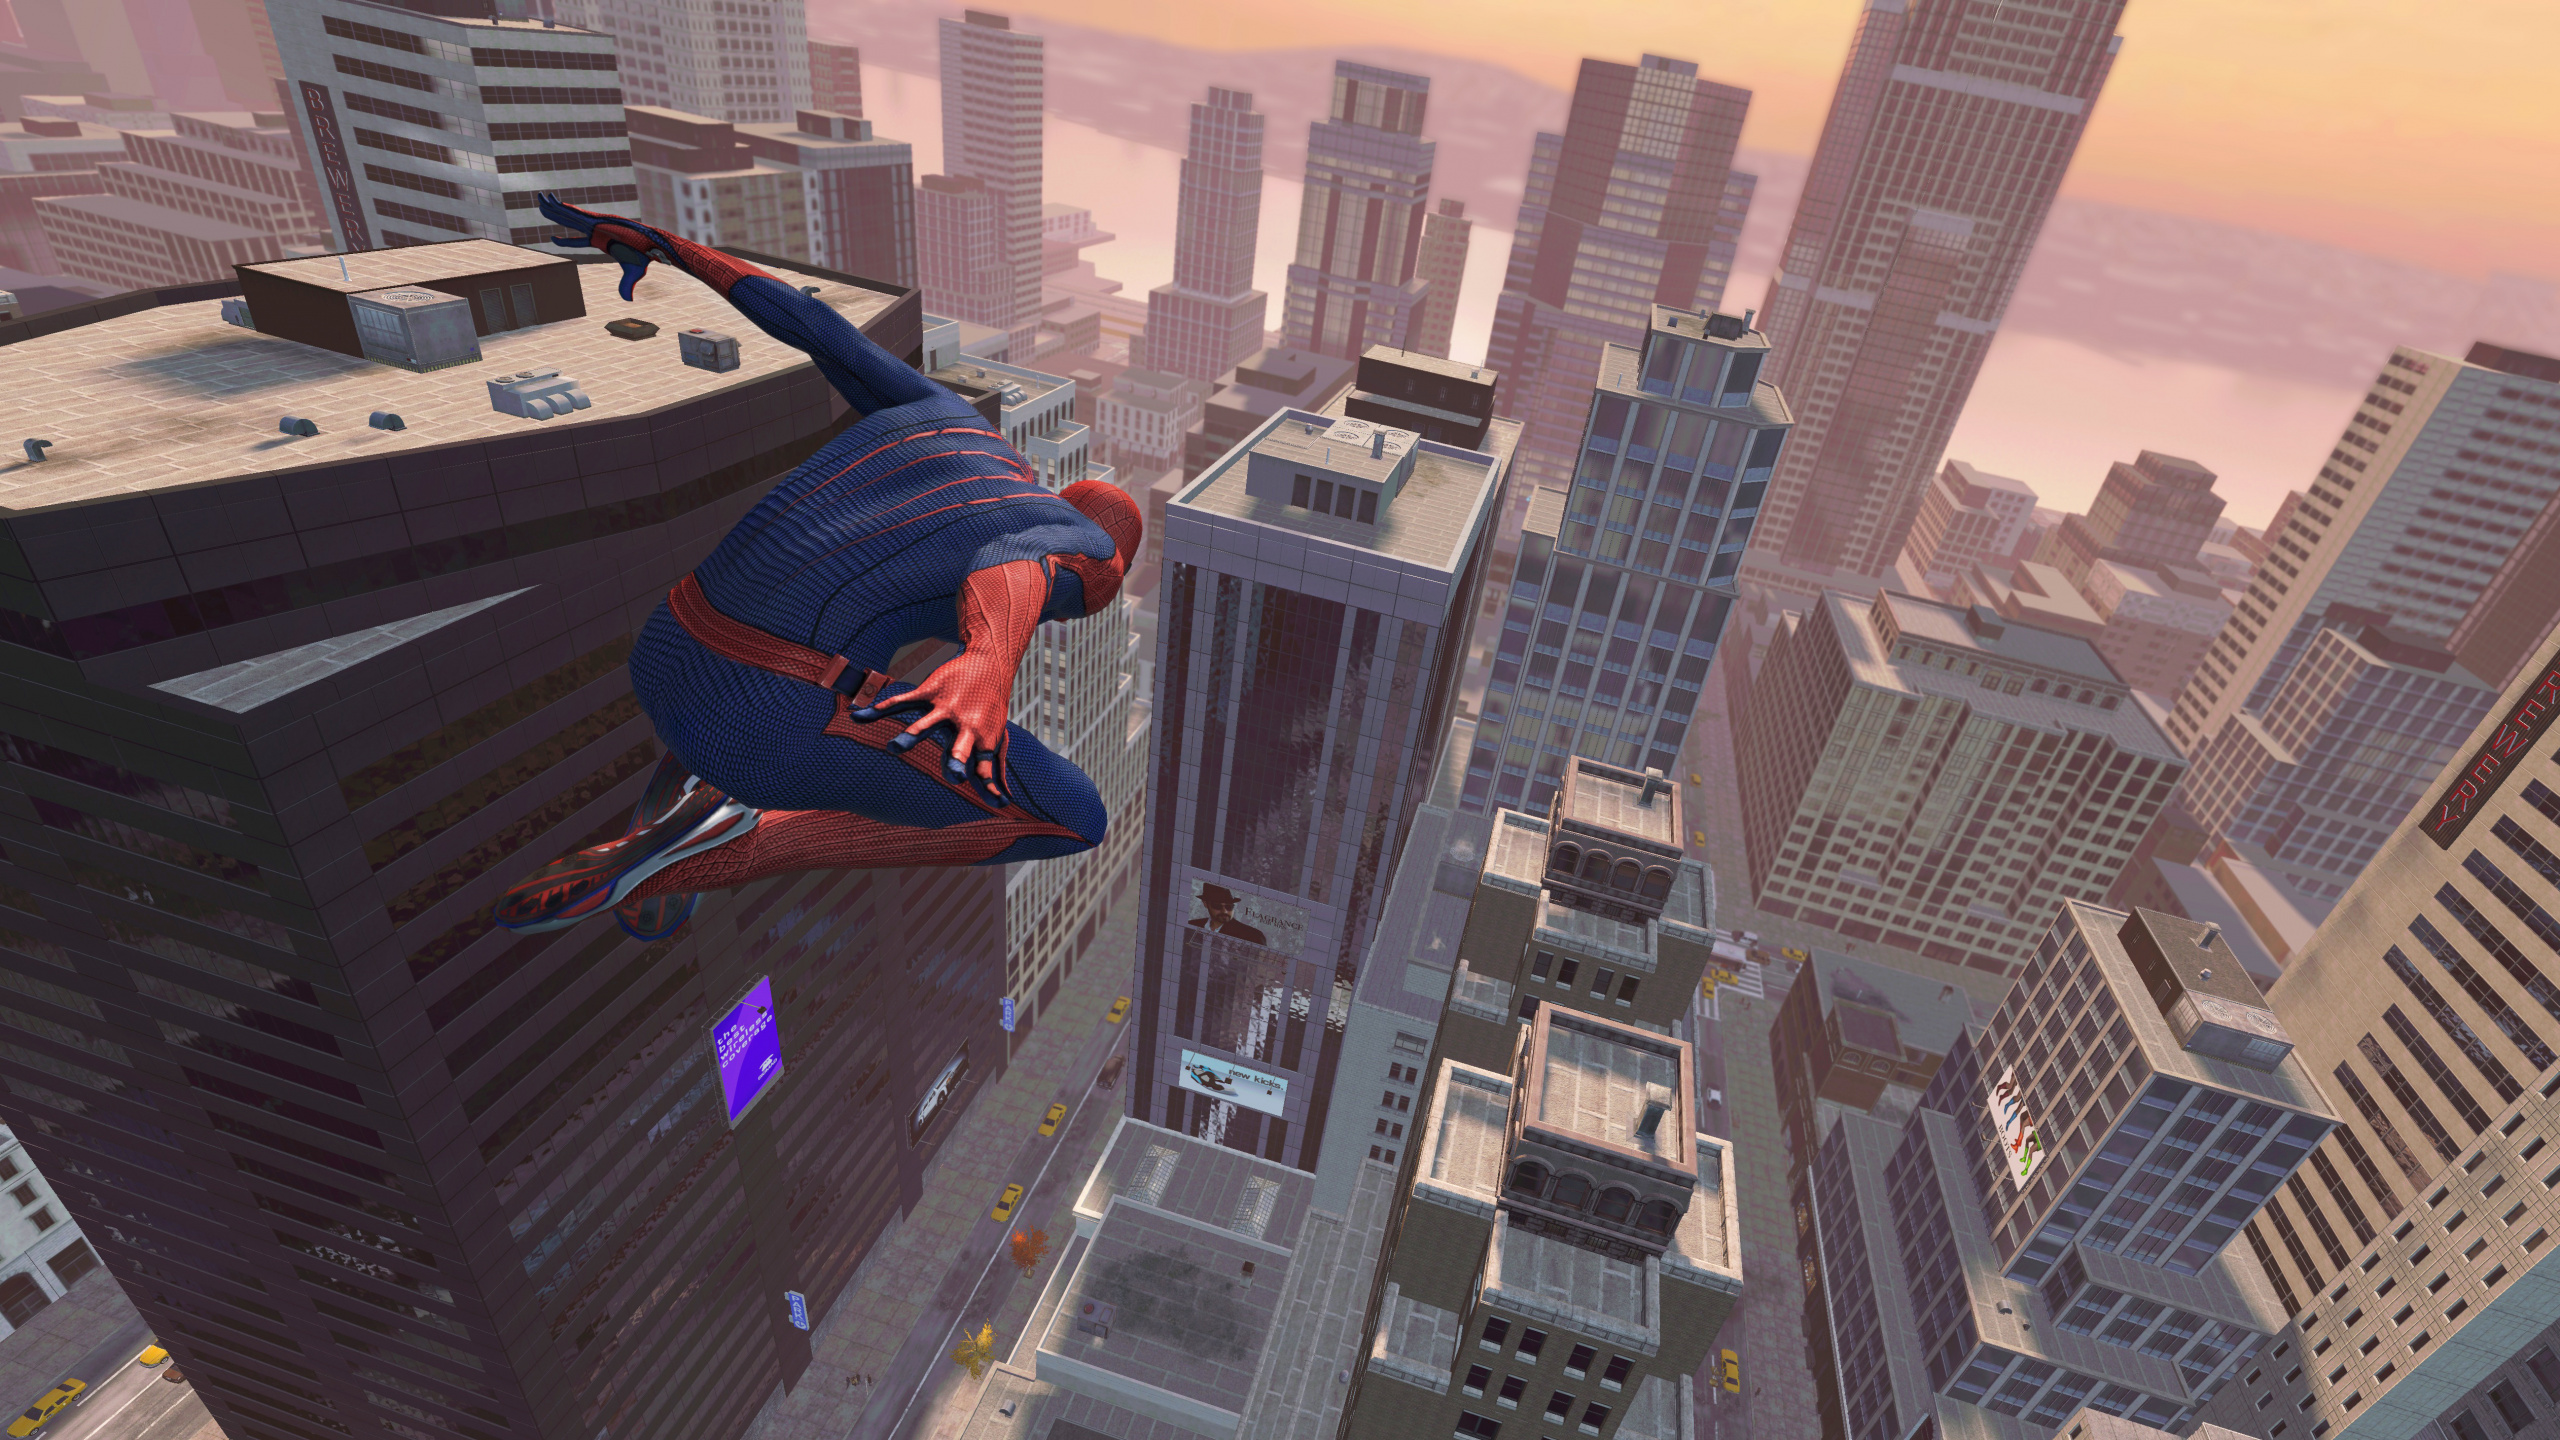 神奇的蜘蛛侠, Spider-man, Beenox, 极限运动, 冒险的游戏 壁纸 2560x1440 允许